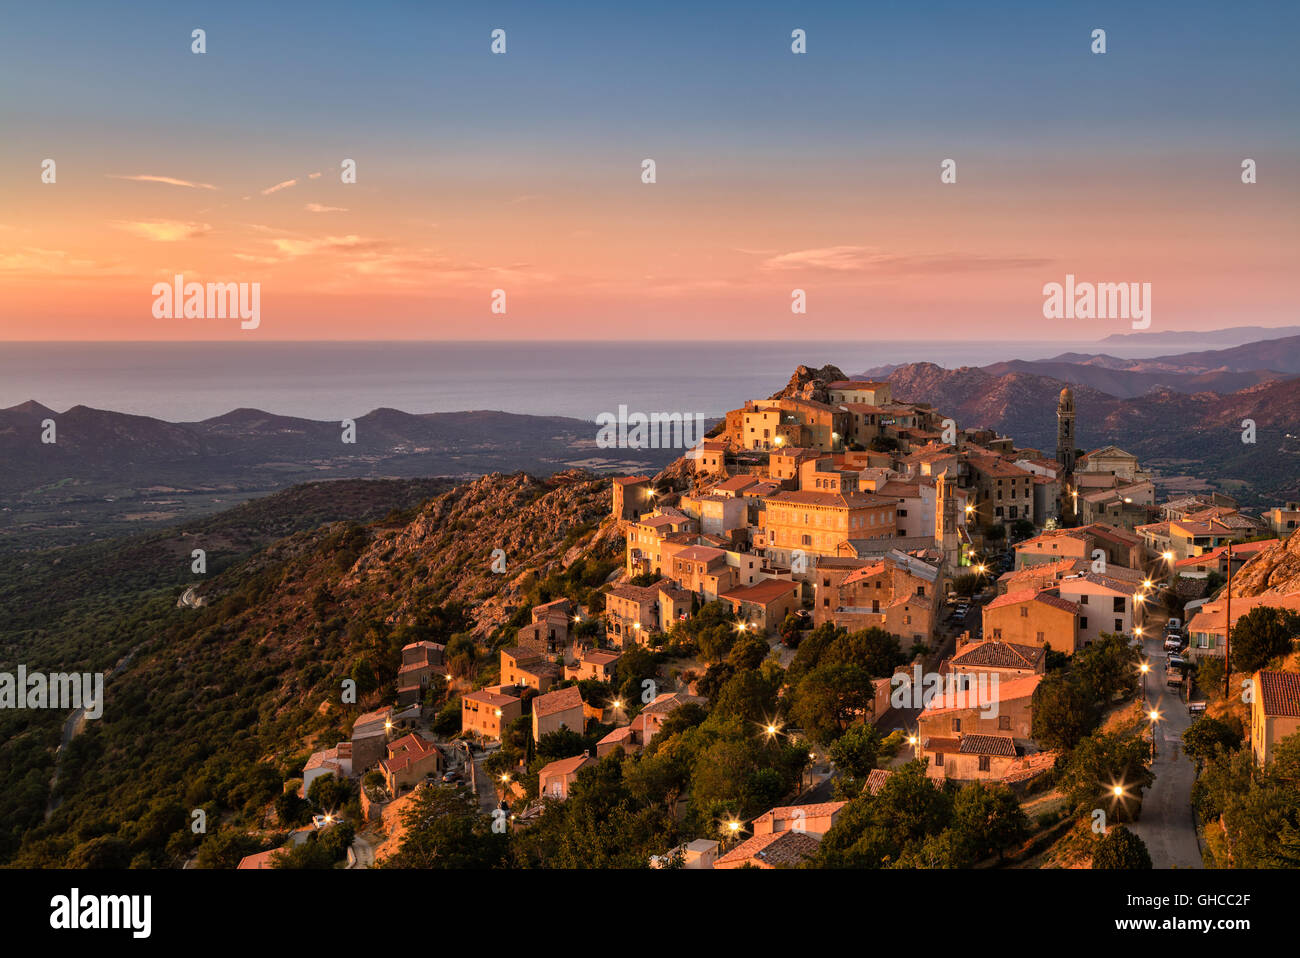 Die Balagne Dorf von Speloncato auf Korsika in der Abenddämmerung in der späten Abend Sonnenschein mit Straßenlaternen auf und Regino Tal gebadet Stockfoto